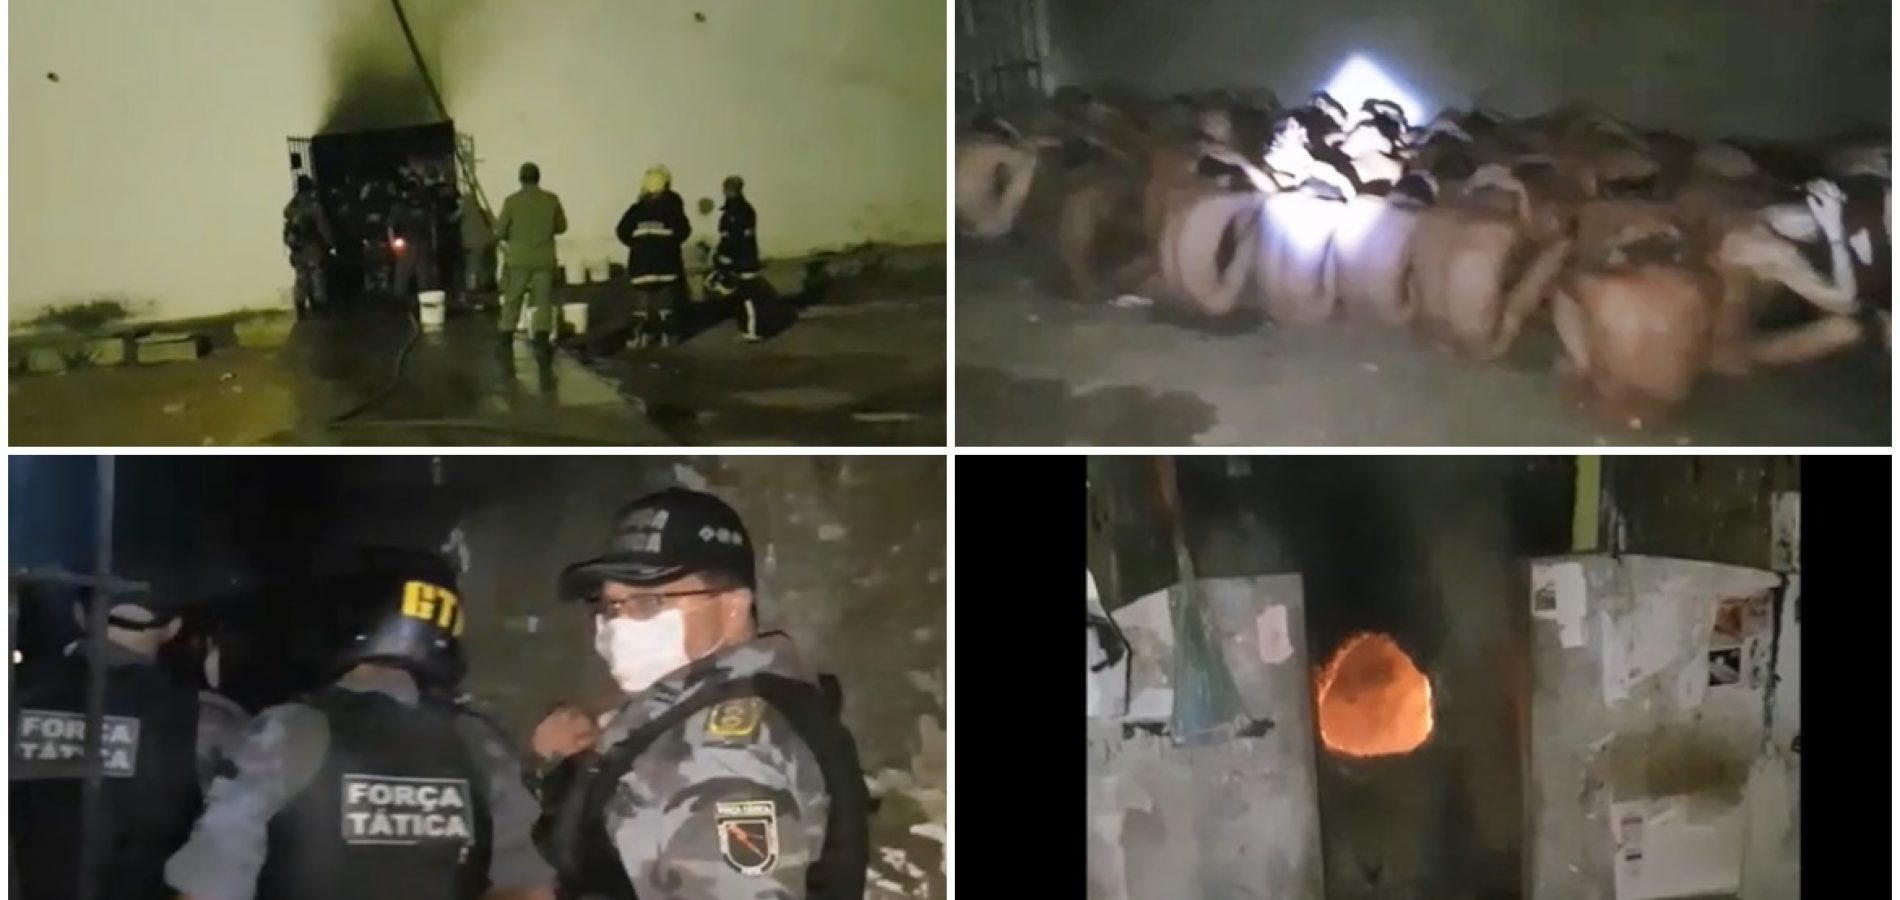 Vídeo mostra invasão da polícia e as marcas de destruição no presídio de Picos. Assista!